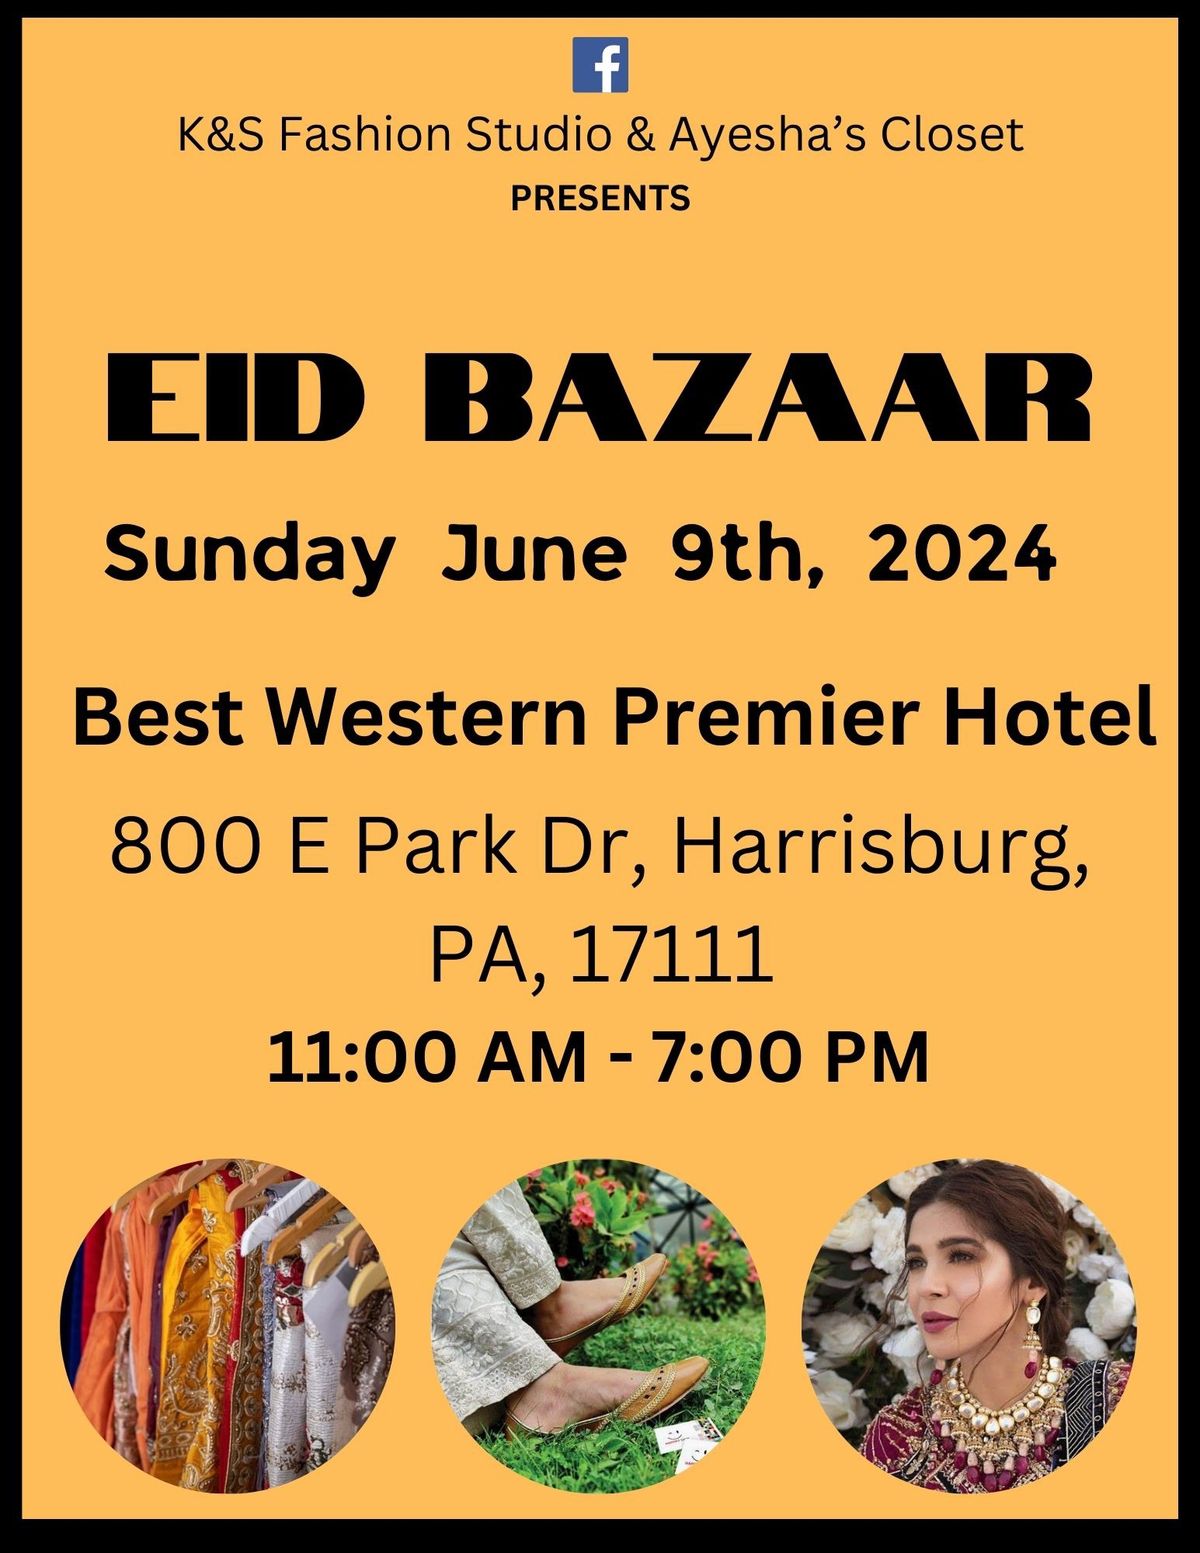 Eid bazaar 